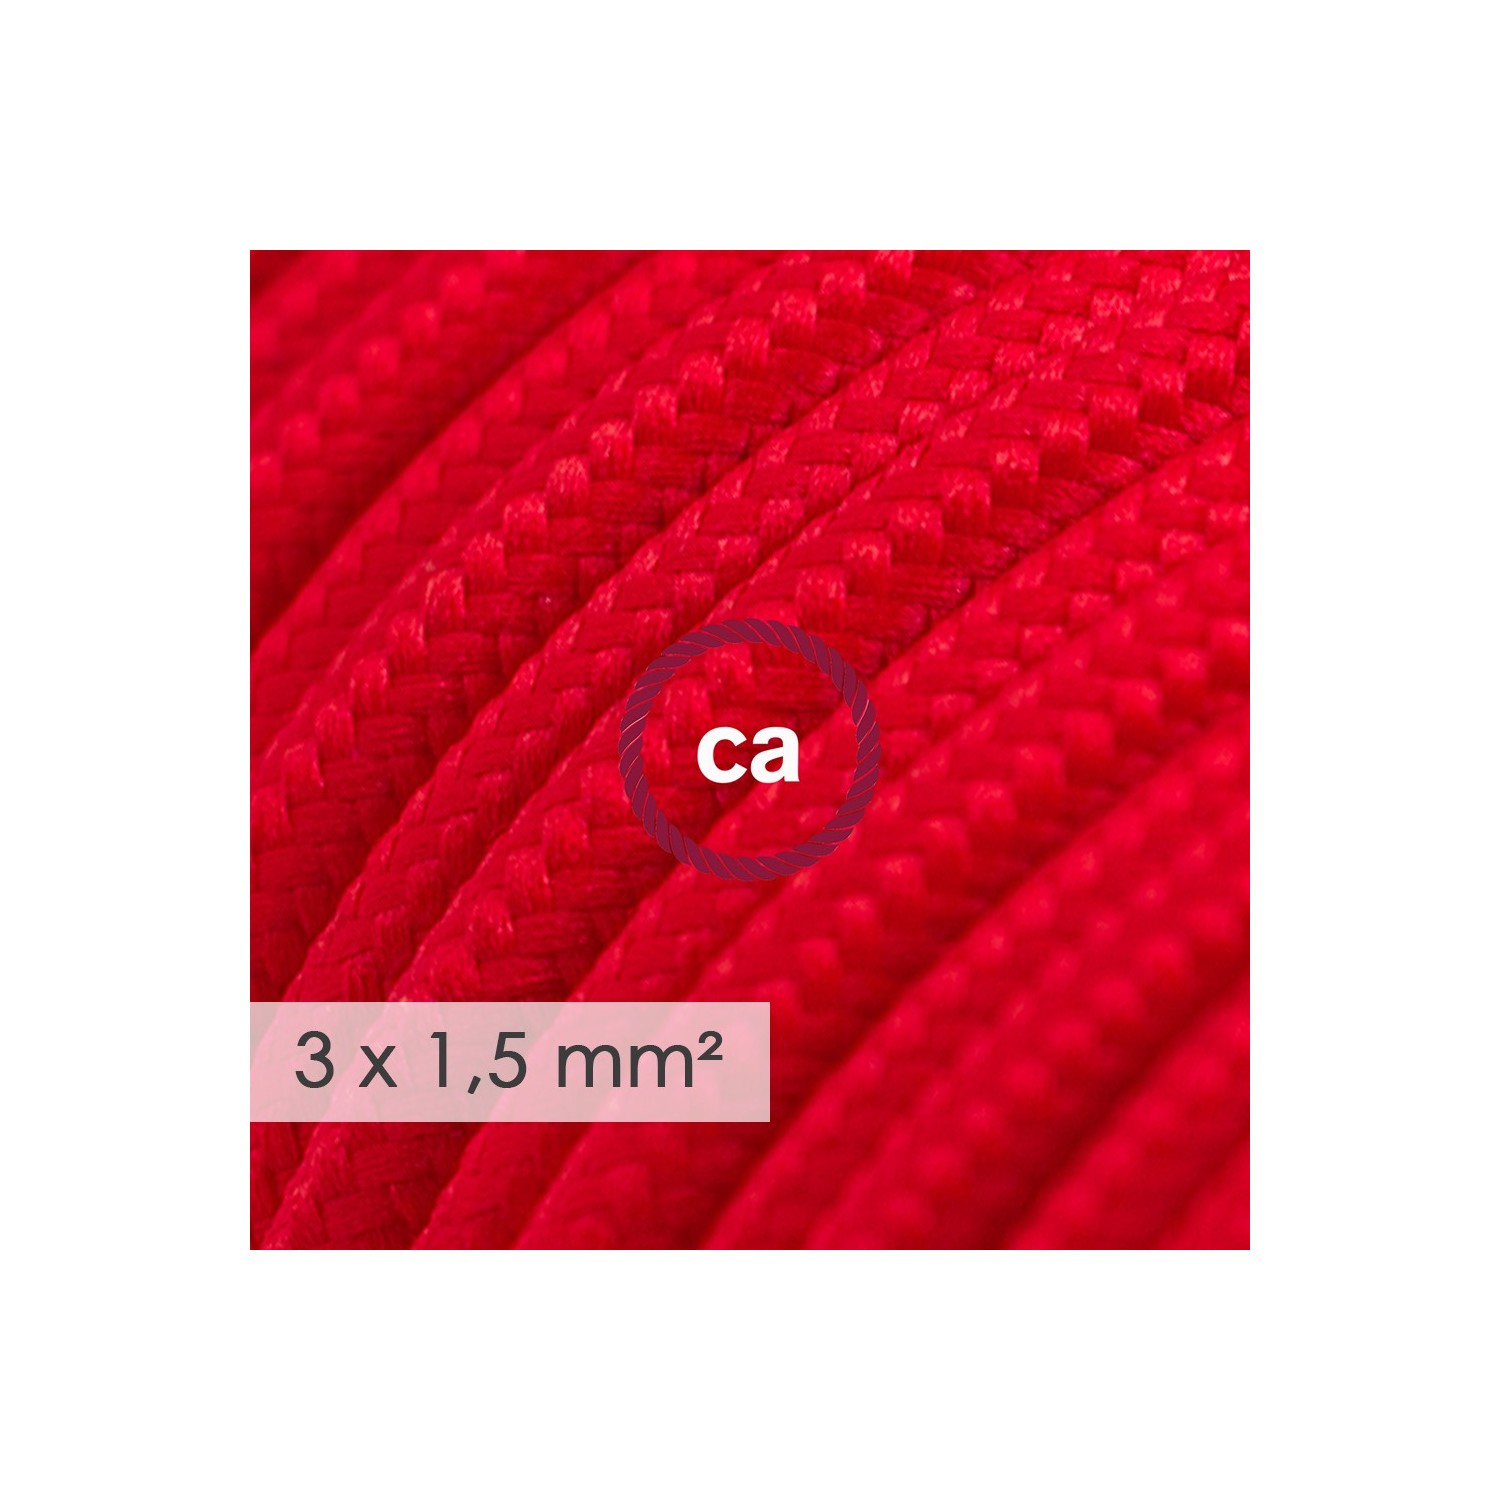 Stekkerdoos met strijkijzersnoer van rood viscose RM09 en randaarde stekker met comfortabele "ring" grip